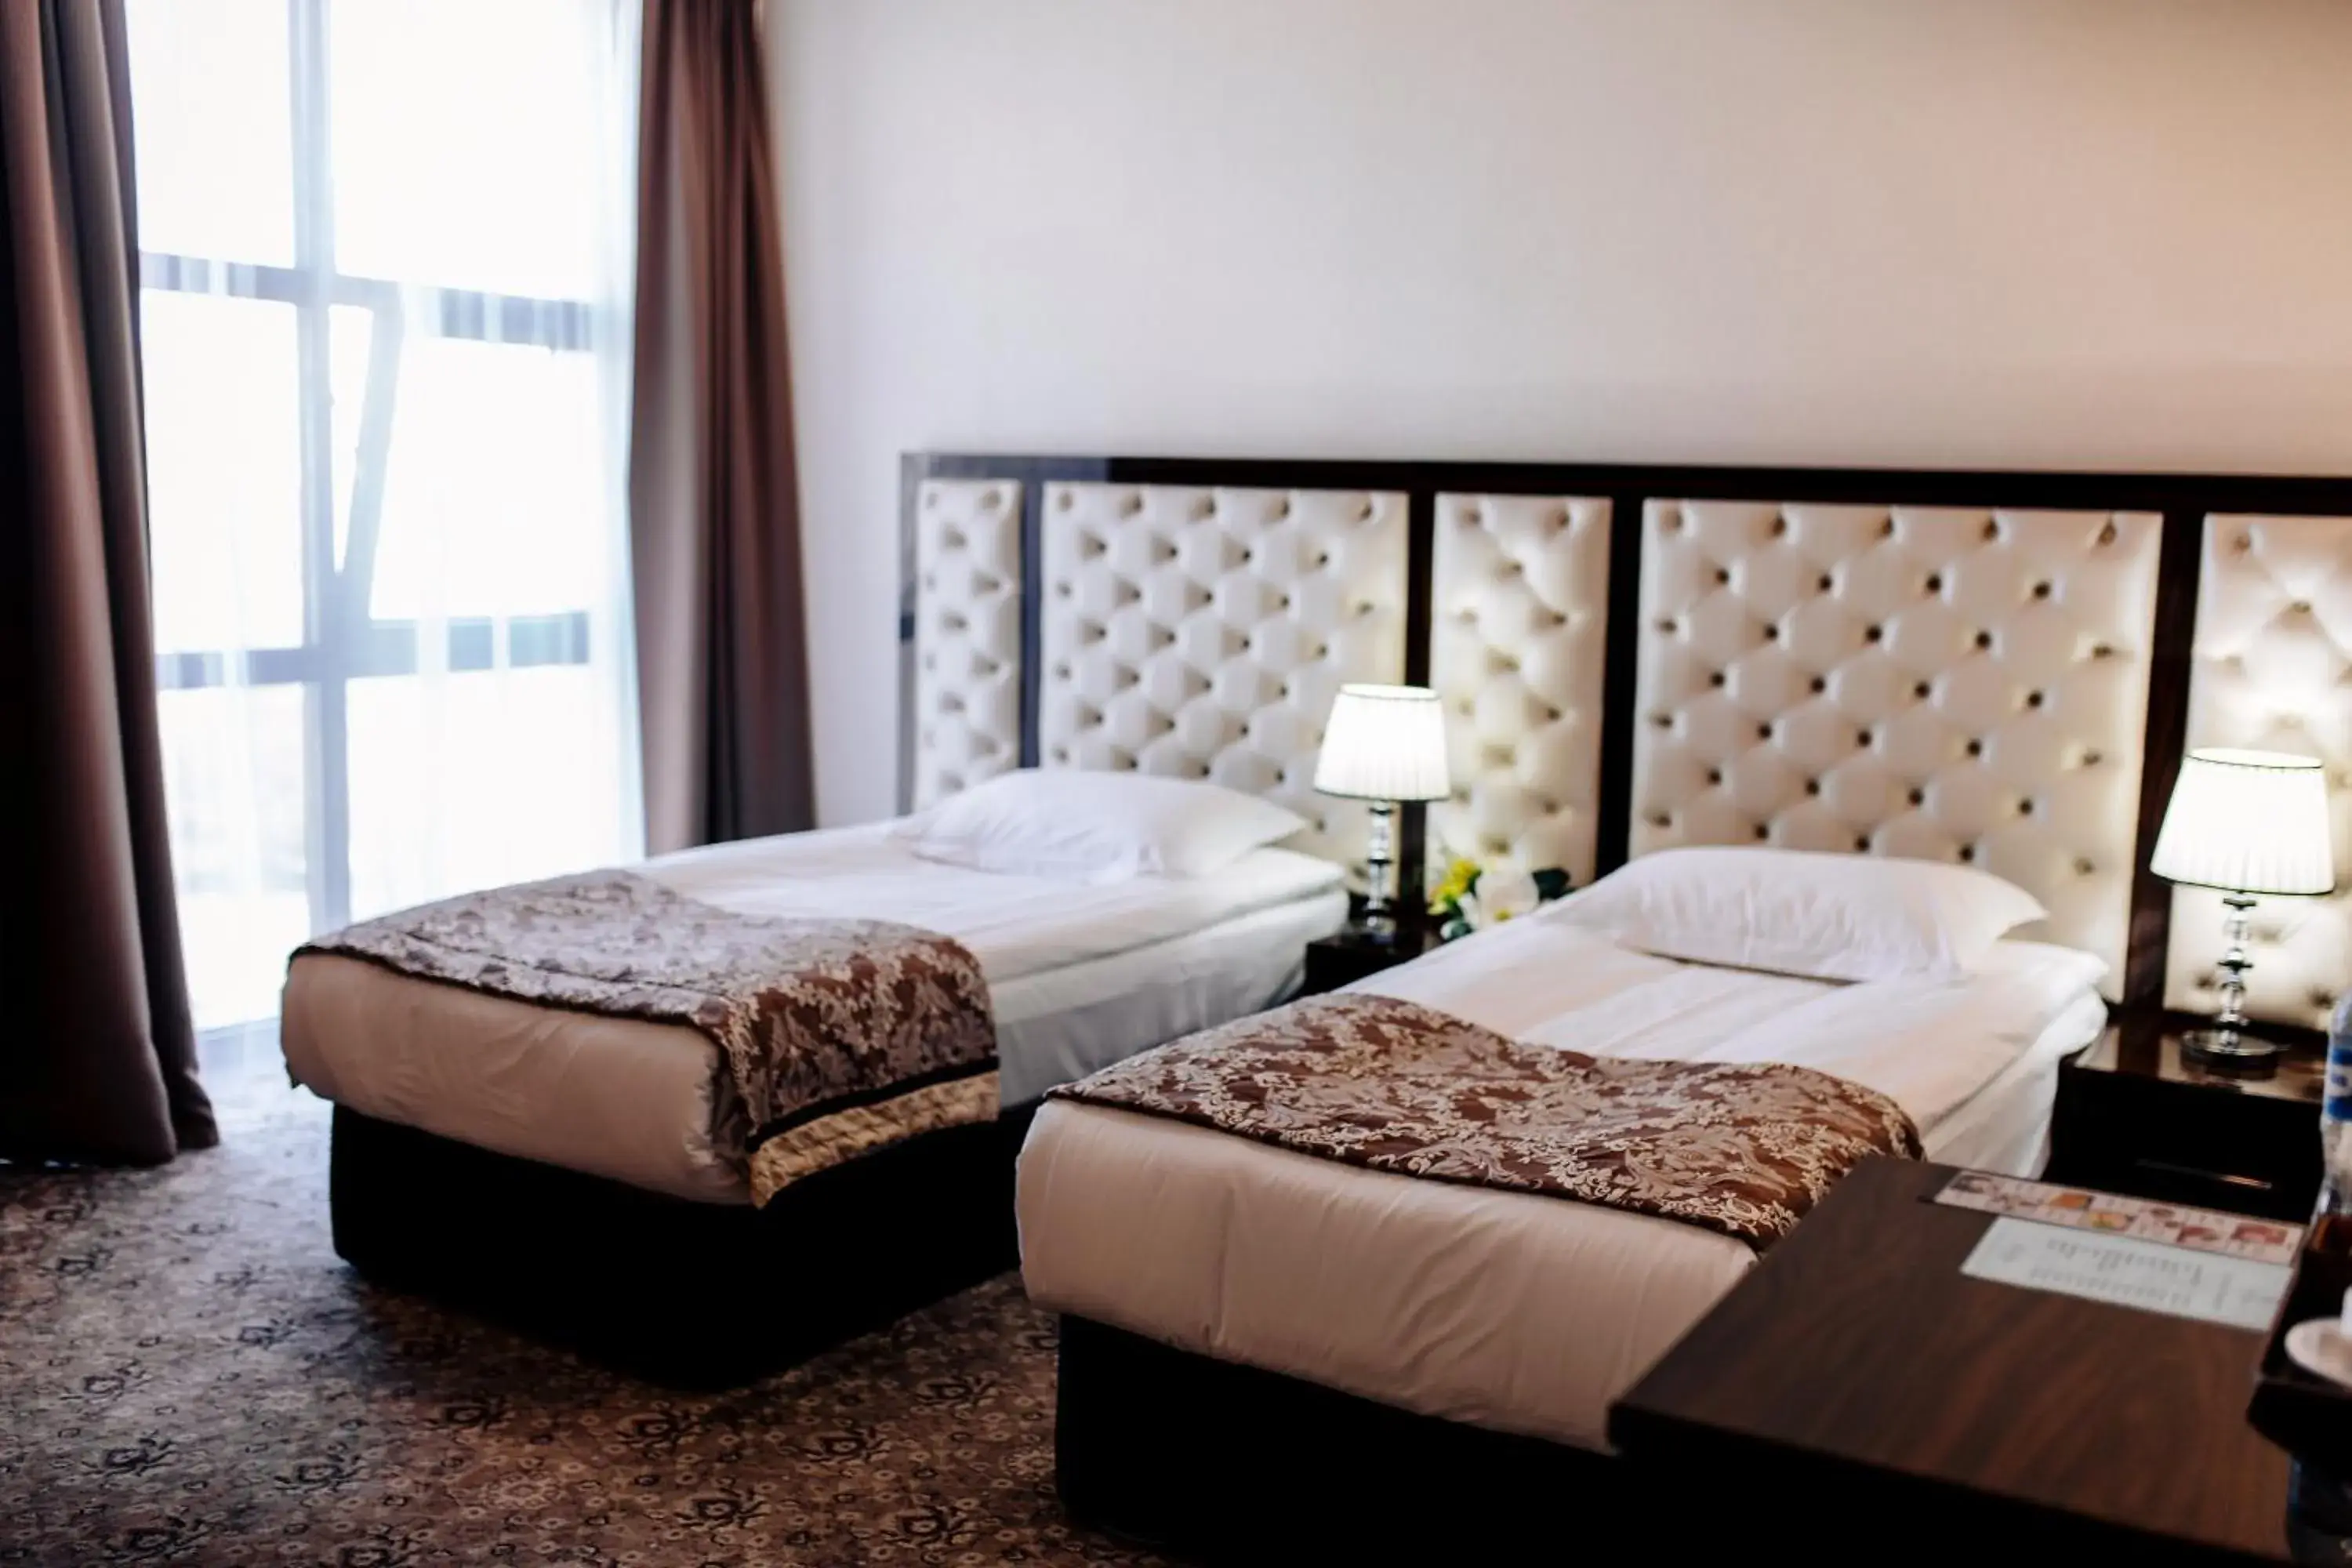 Decorative detail, Bed in Plaza Hotel Bishkek